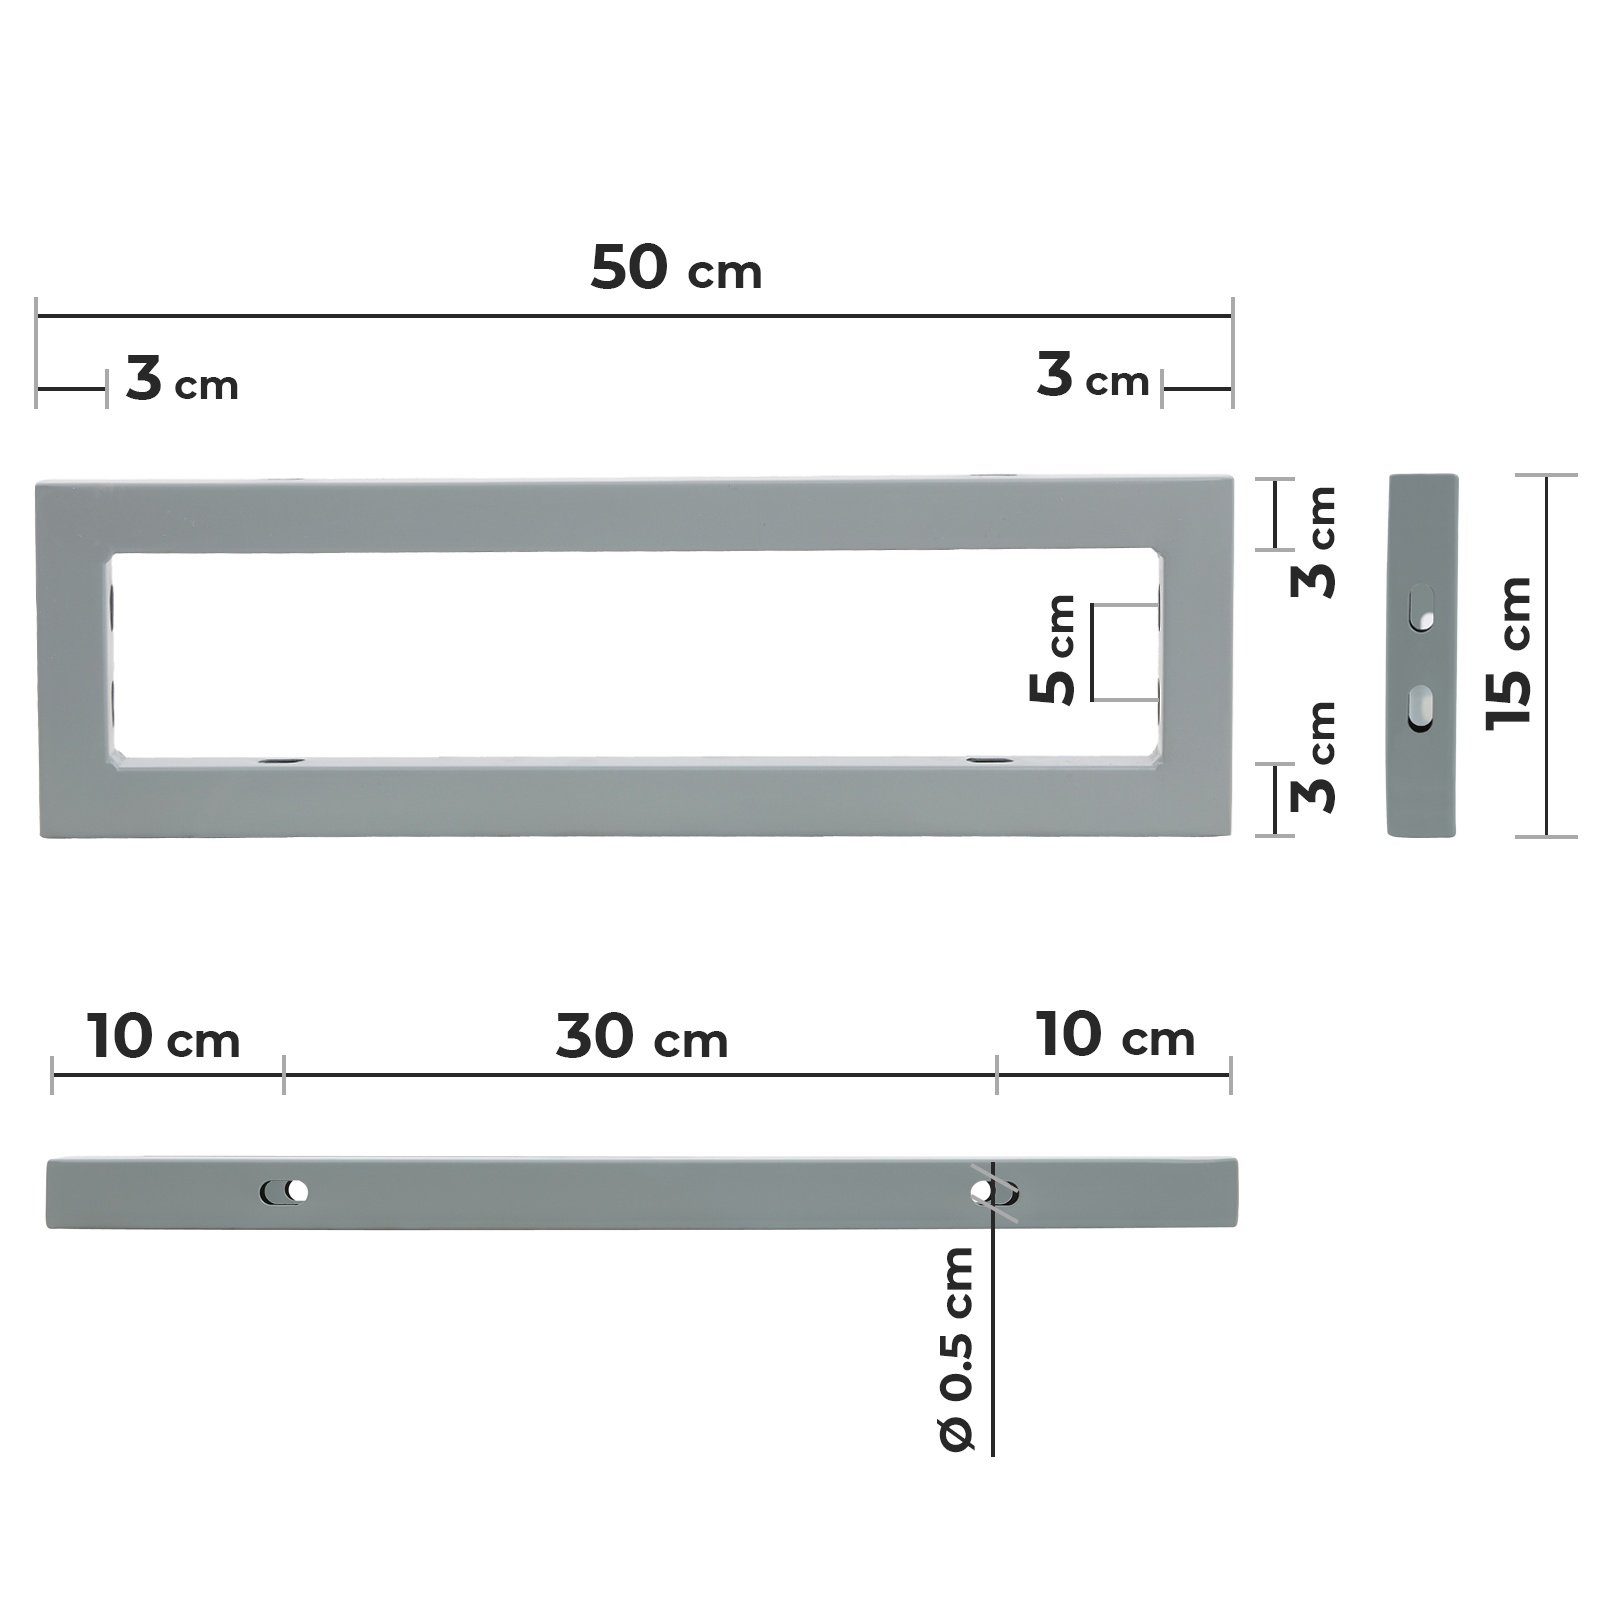 VENDOMNIA Tischbein Wandkonsole für Set, 2er - Waschtischhalterung, Metall Regalträger Grau Waschtisch Rergalhalter